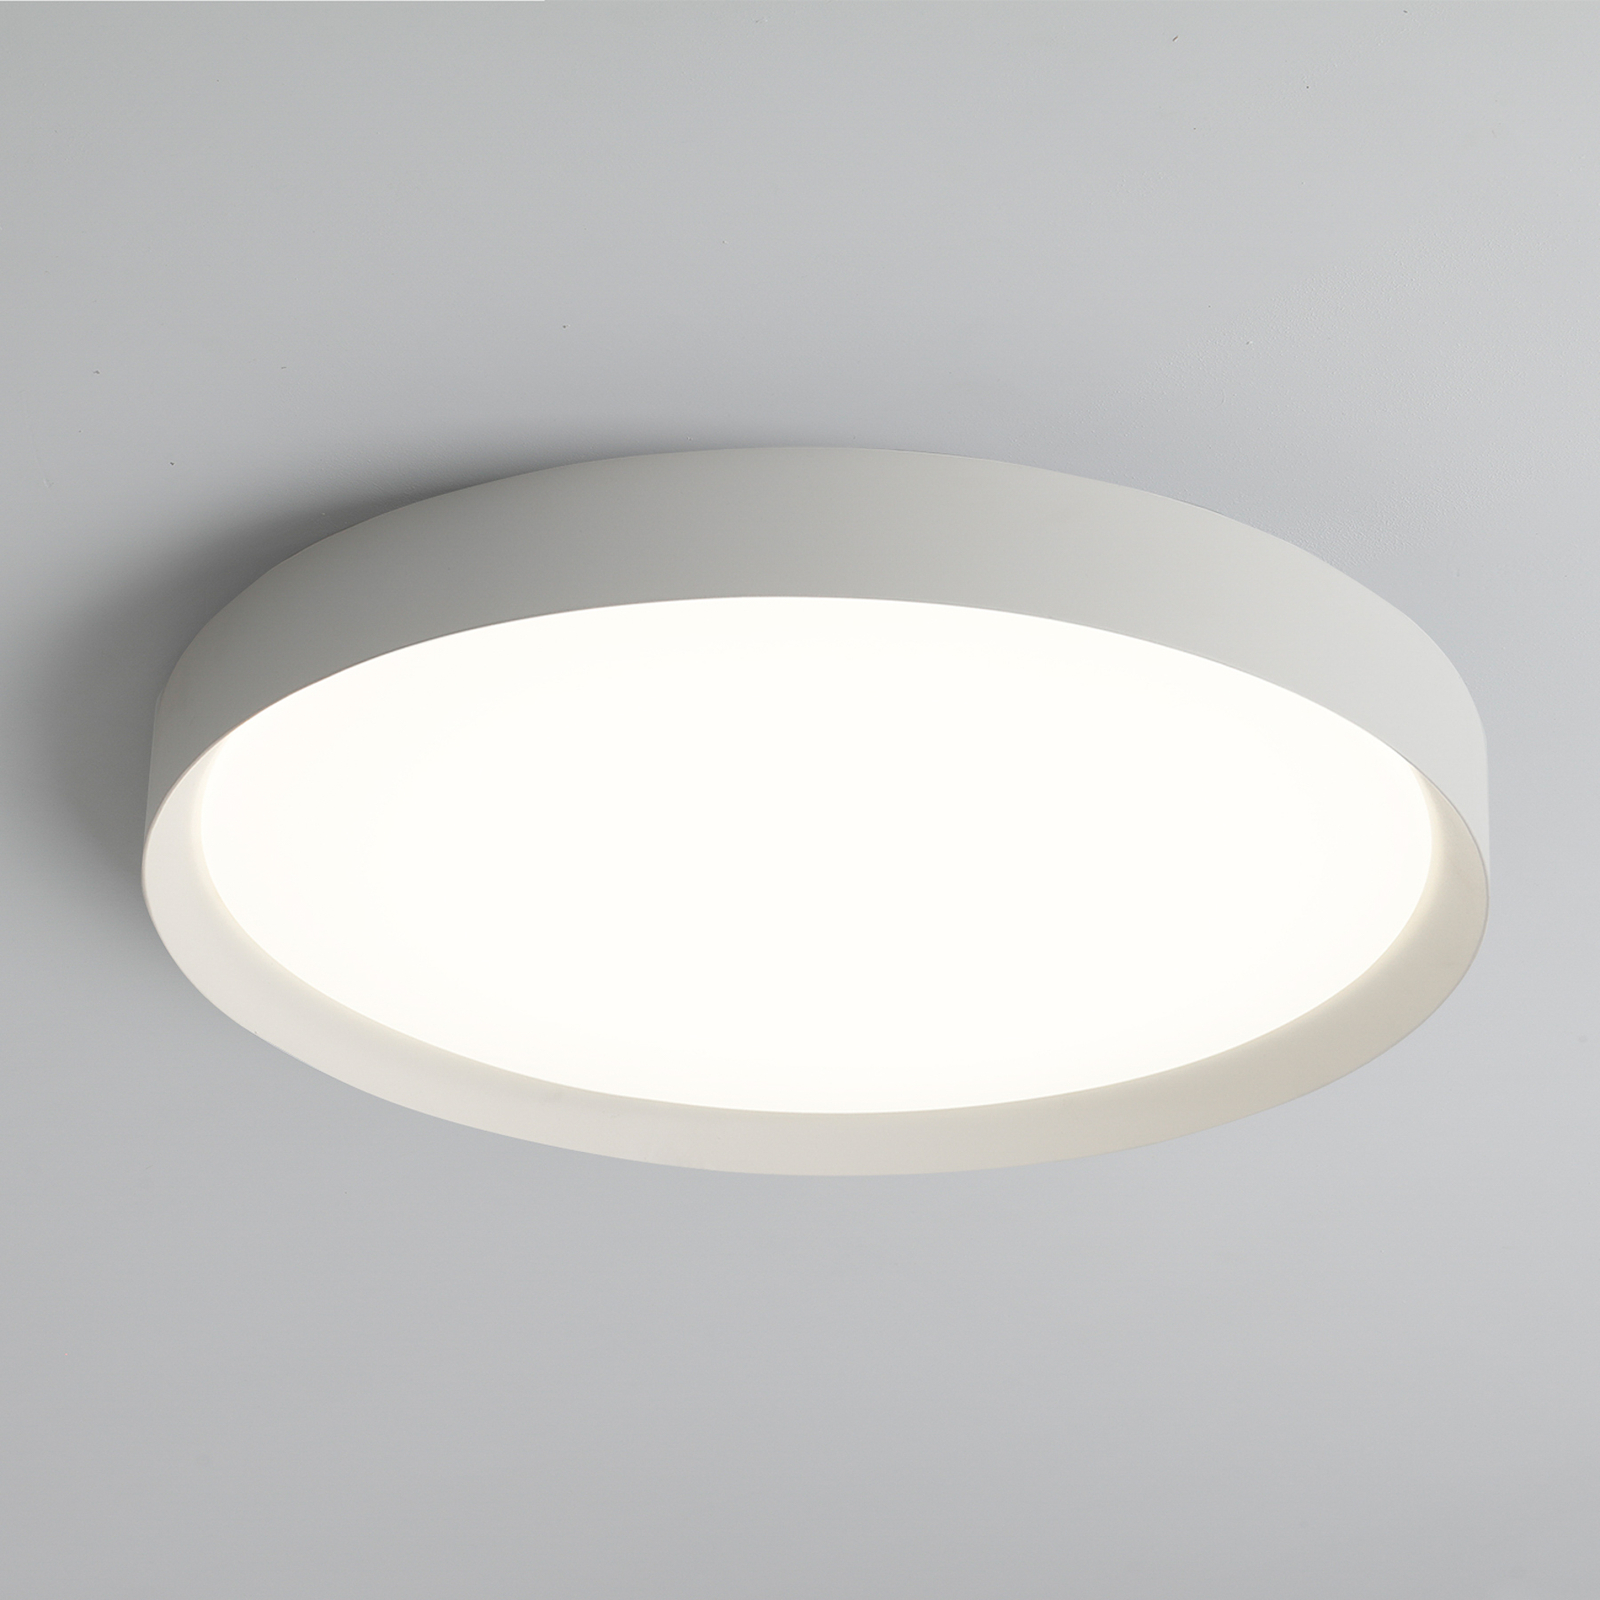 Plafoniera LED Minsk, Ø 60 cm, Casambi, 42 W, bianco